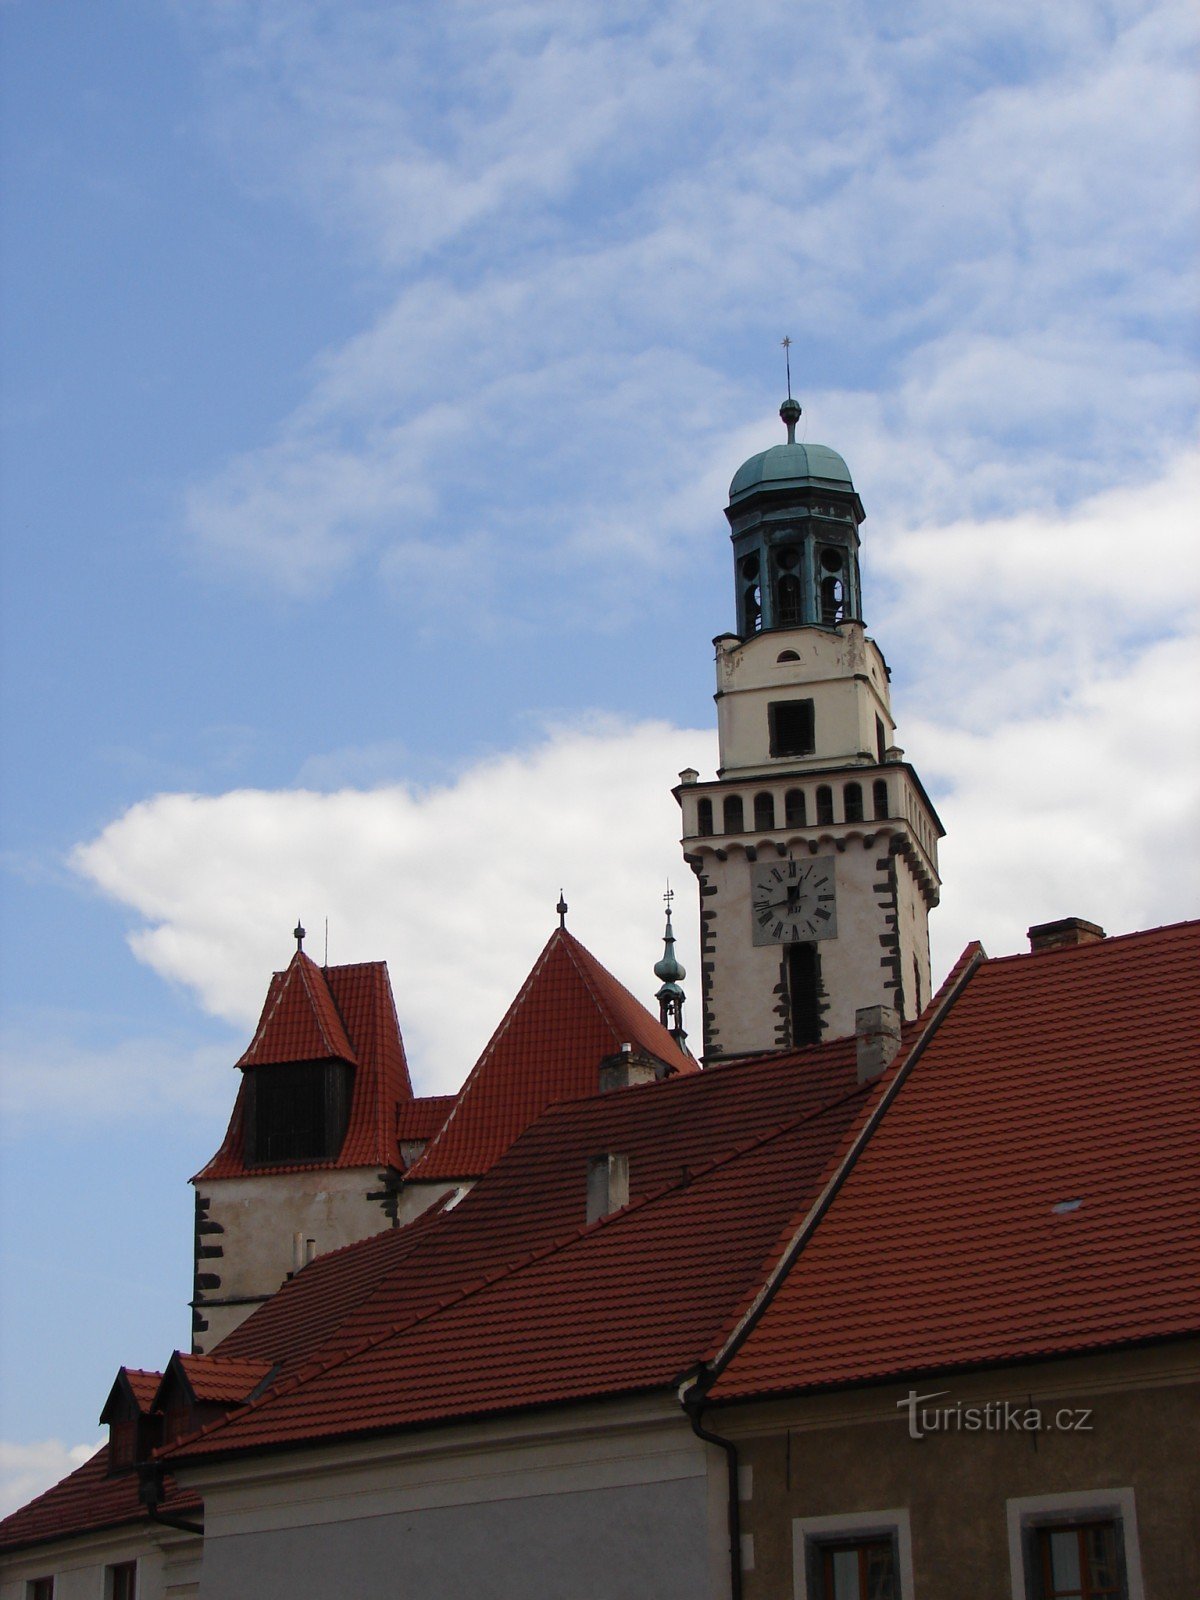 Visita la chiesa di S. Jakub a Prachatice, luogo protettore dei mercanti e dei pellegrini